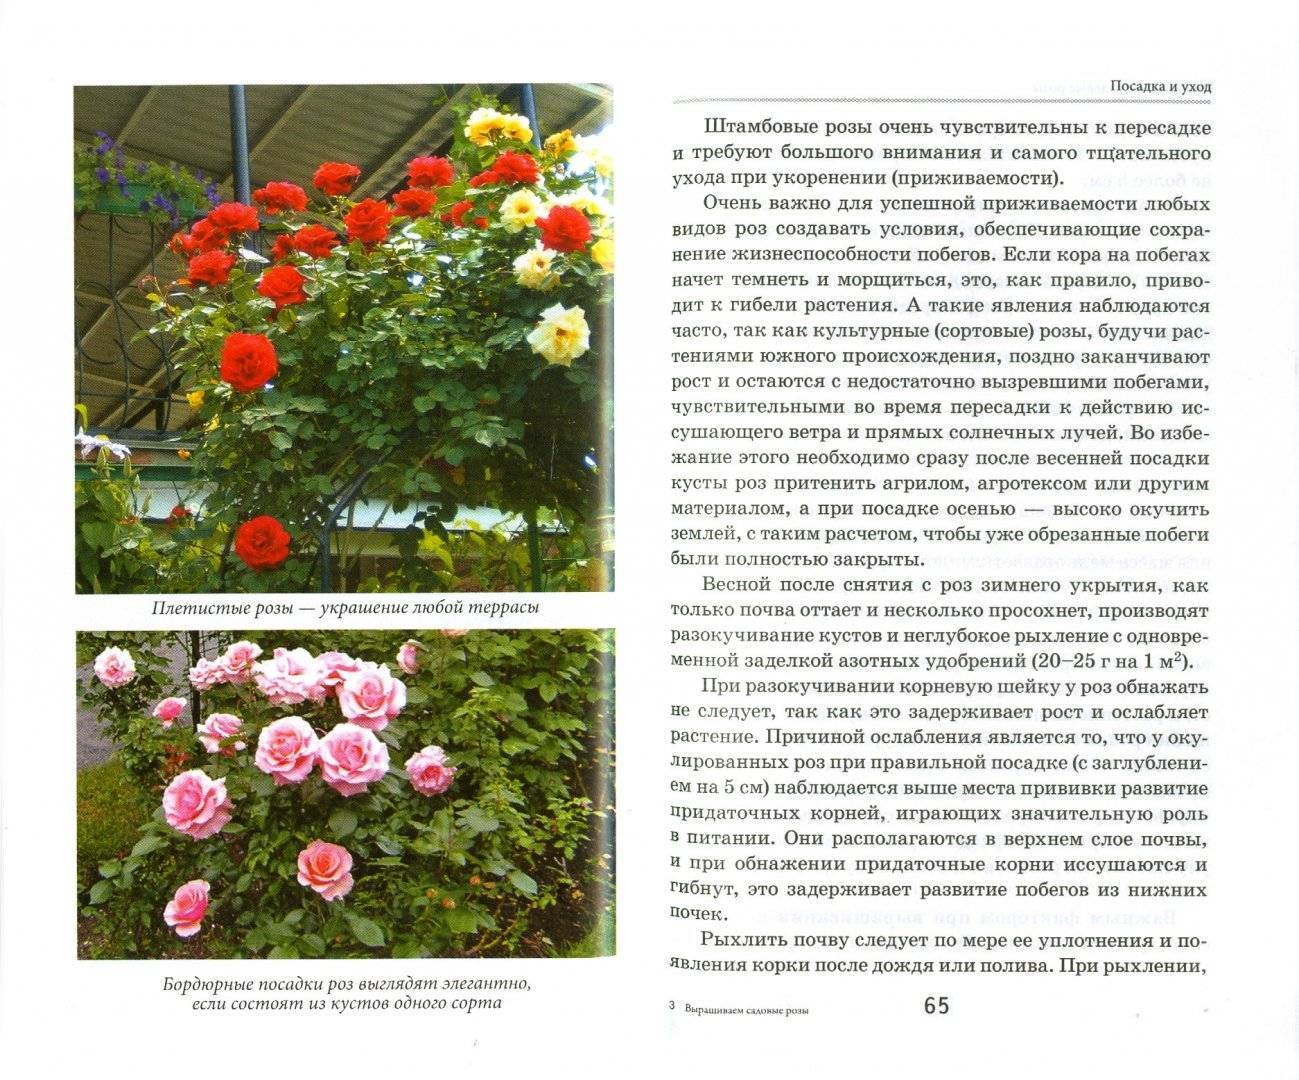 Парковые розы для подмосковья и средней полосы: виды, сорта, особенности выращивания